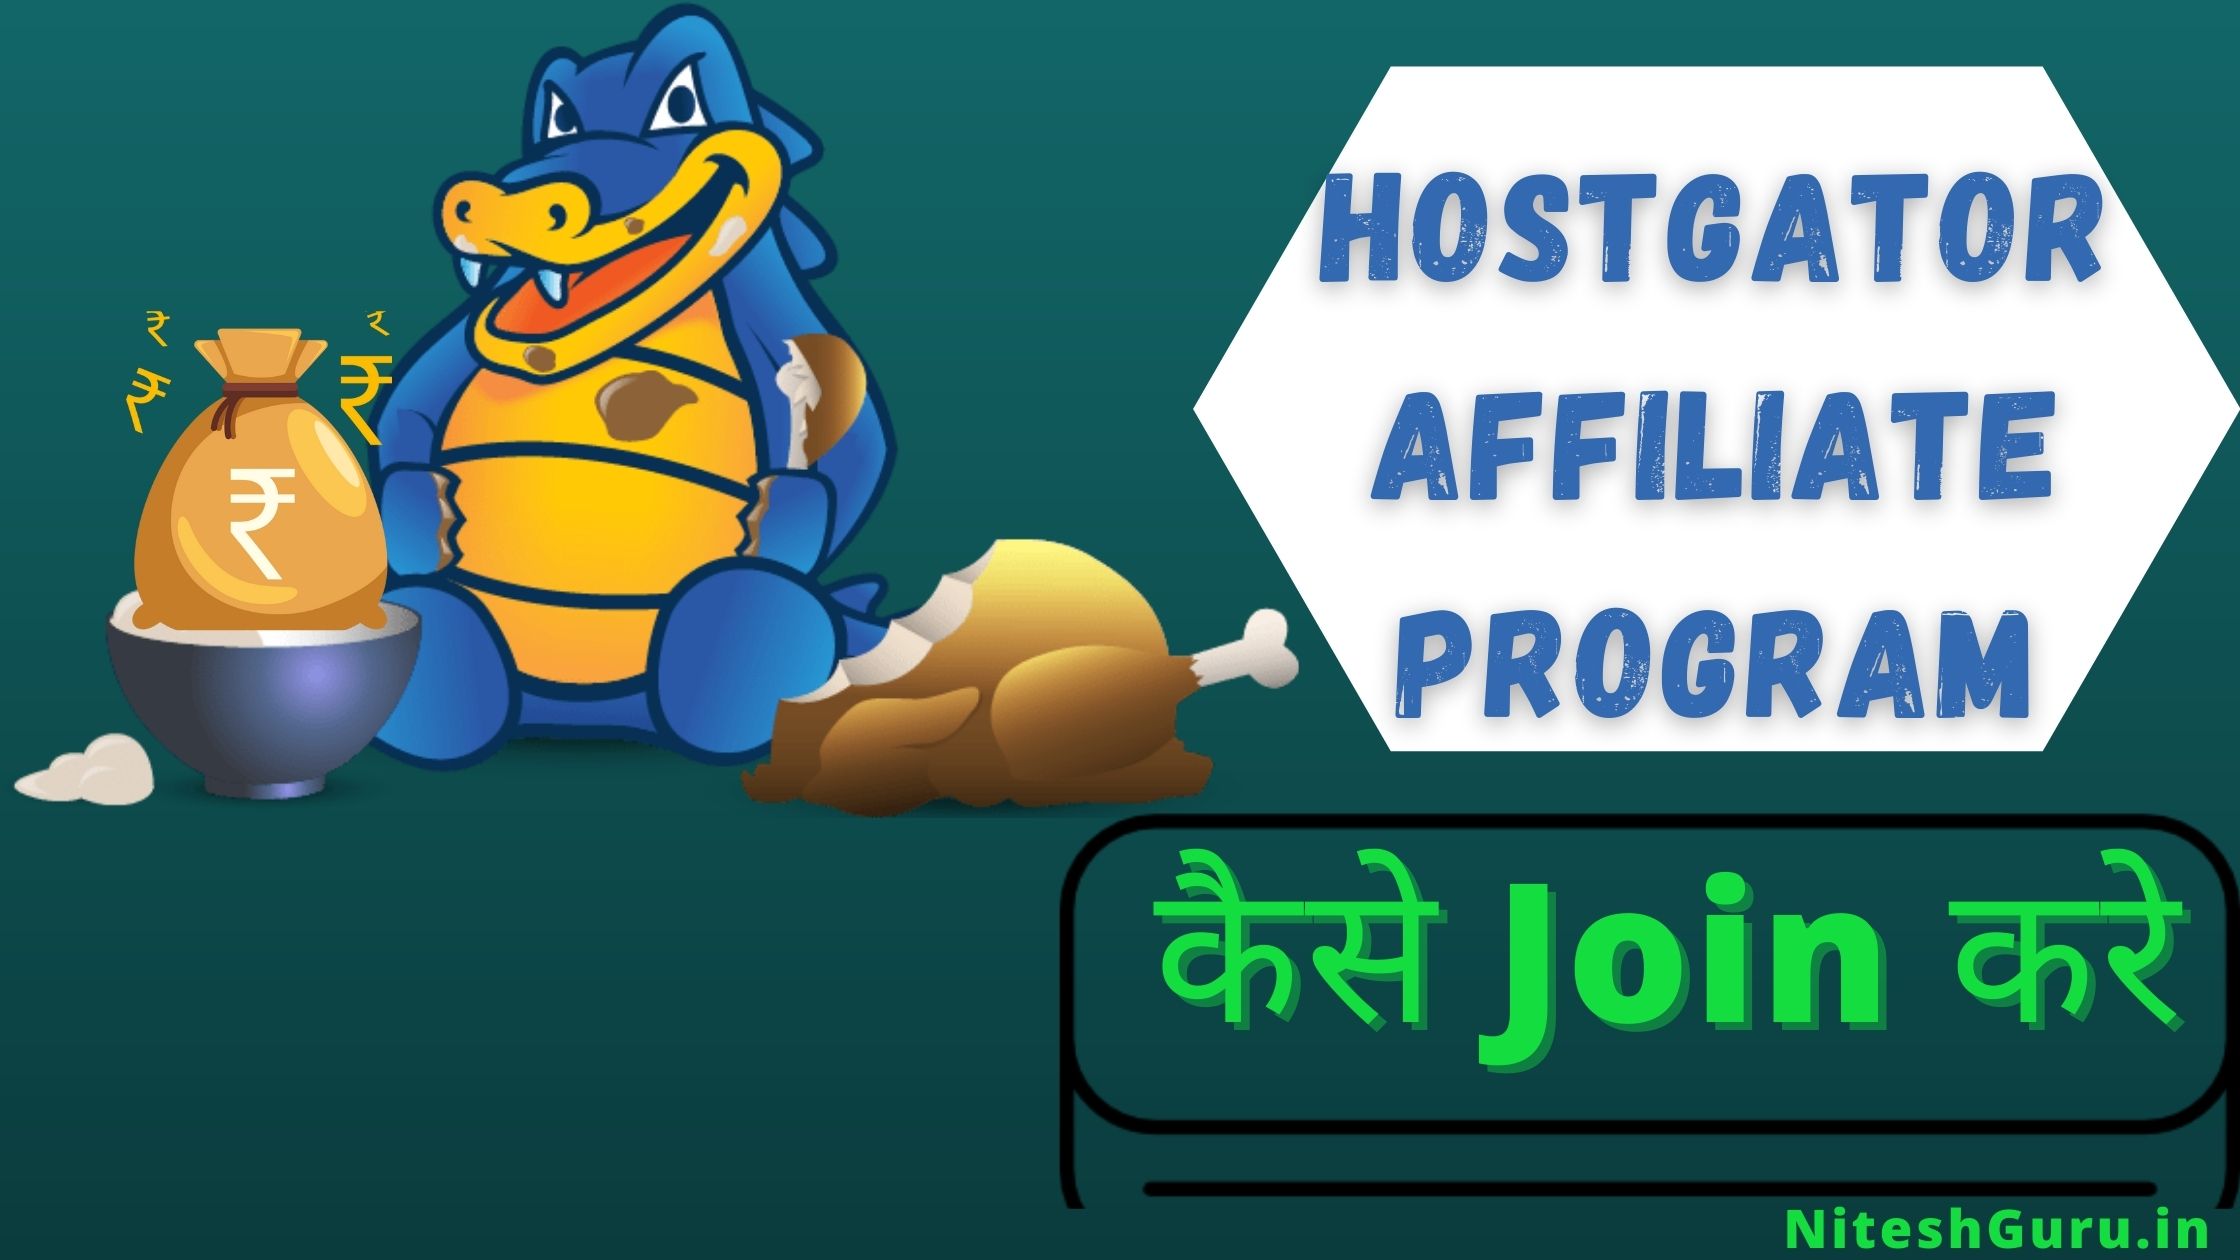 Hostgator affiliate program in hindi